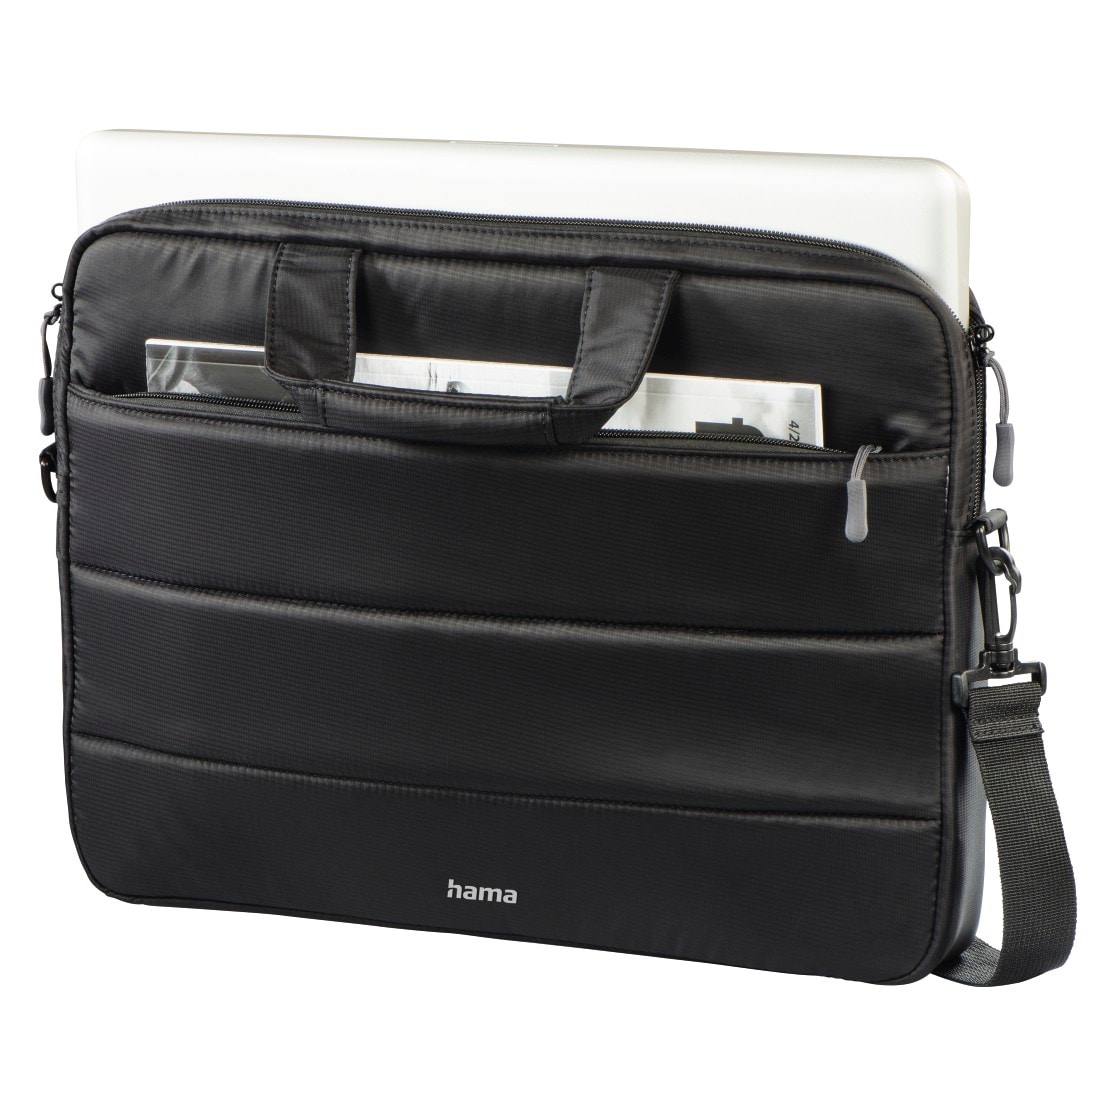 Hama Laptoptasche »Notebook Tasche bis 34 cm (13,3 Zoll) aus Nylon, eleganter Look«, Mit Tablet- und Dokumentenfach, Organizerstruktur und Trolleyband